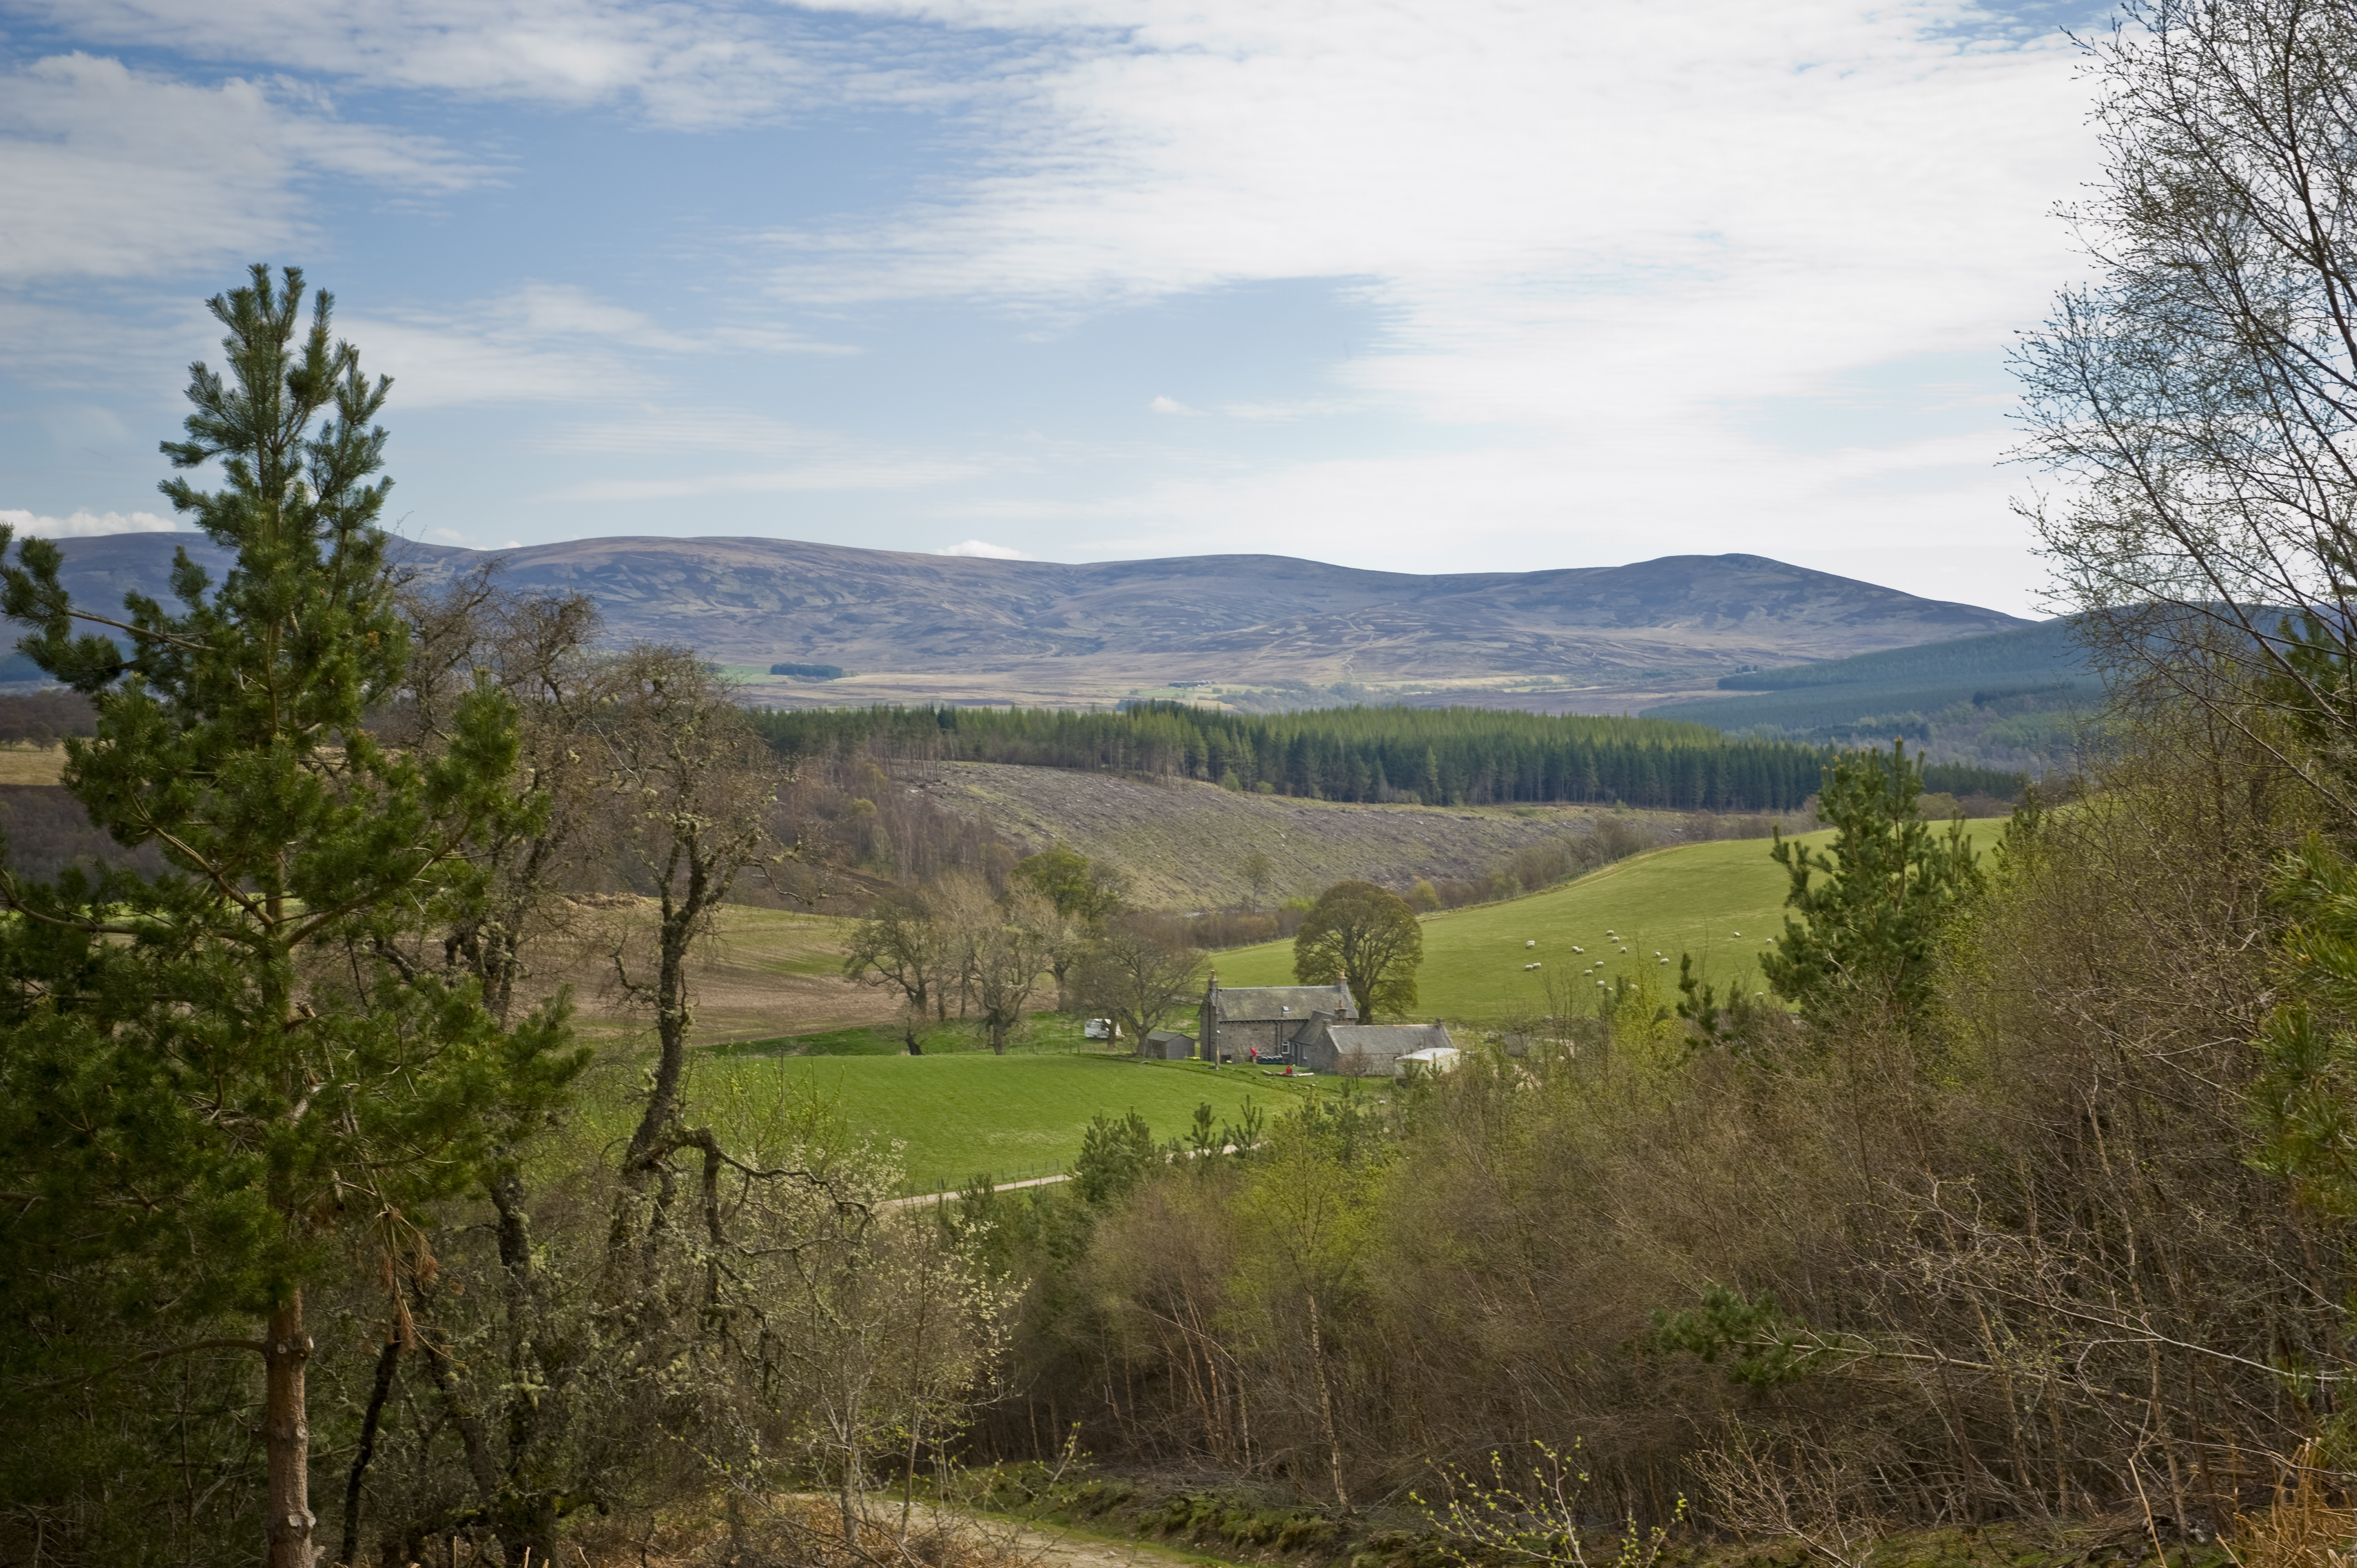 The landscape beside the Glenbeg Bothy